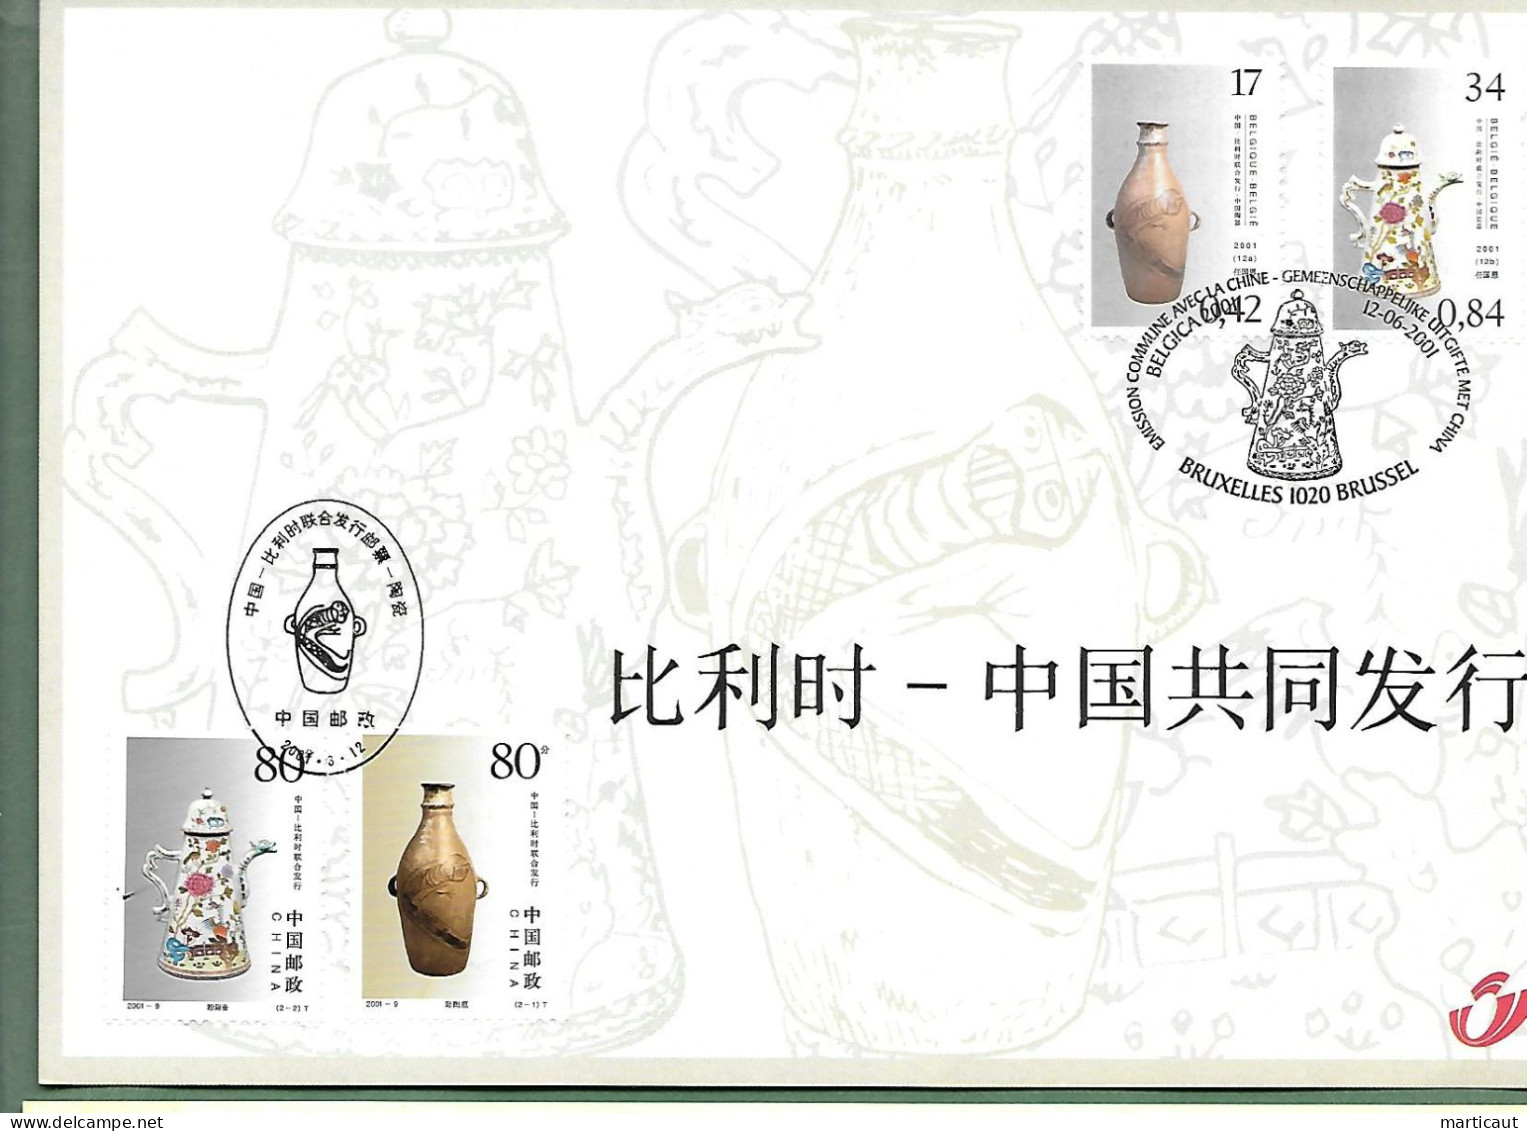 HK 3008 -- Belgique-Chine - Année 2001 - Souvenir Cards - Joint Issues [HK]